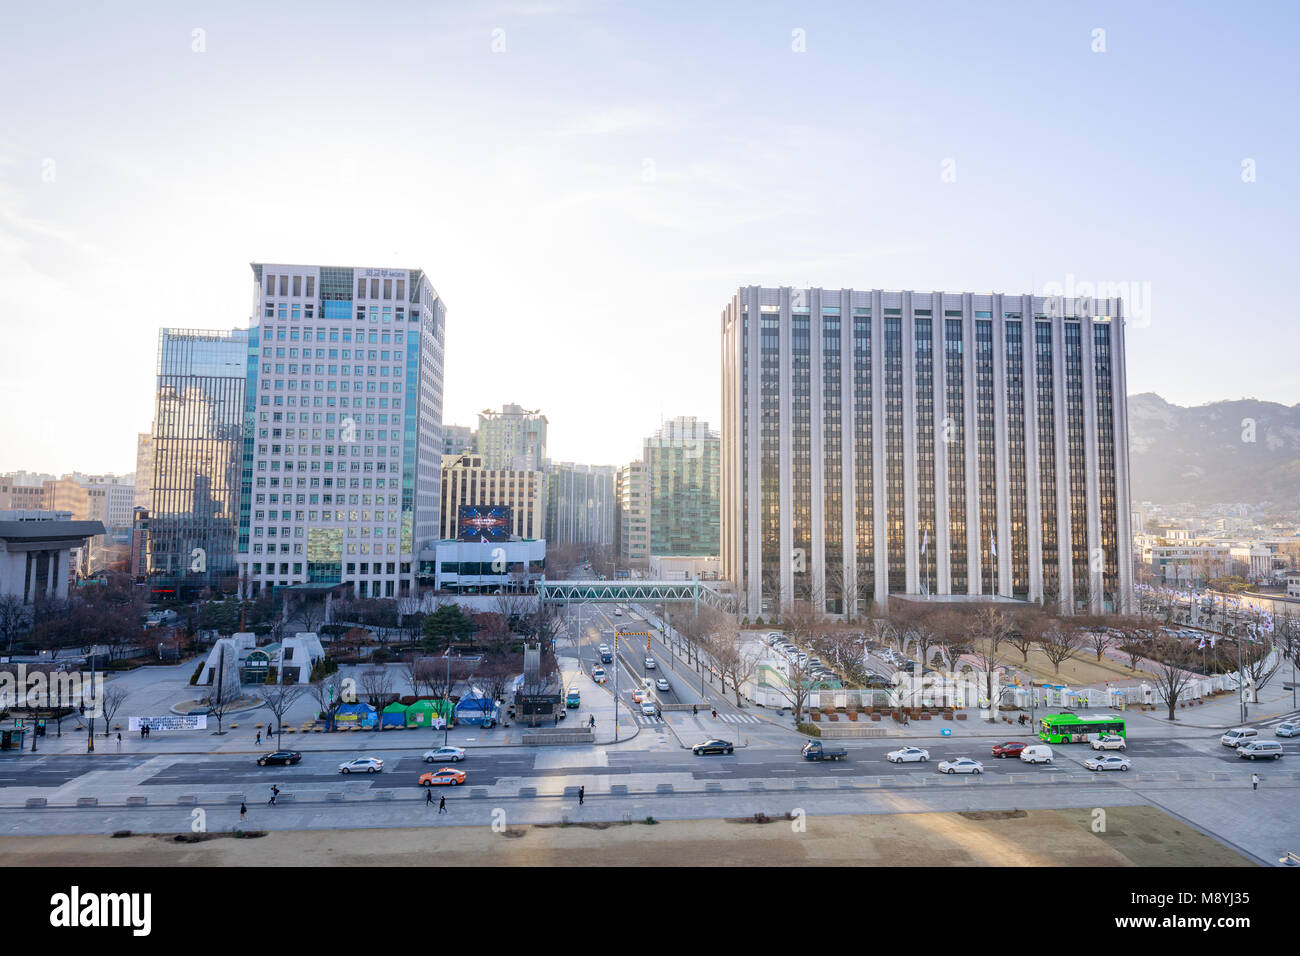 Séoul, Corée du Sud - mars 6, 2018 : l'édifice du gouvernement central complexe dans la ville de Séoul, la place Gwanghwamun Banque D'Images